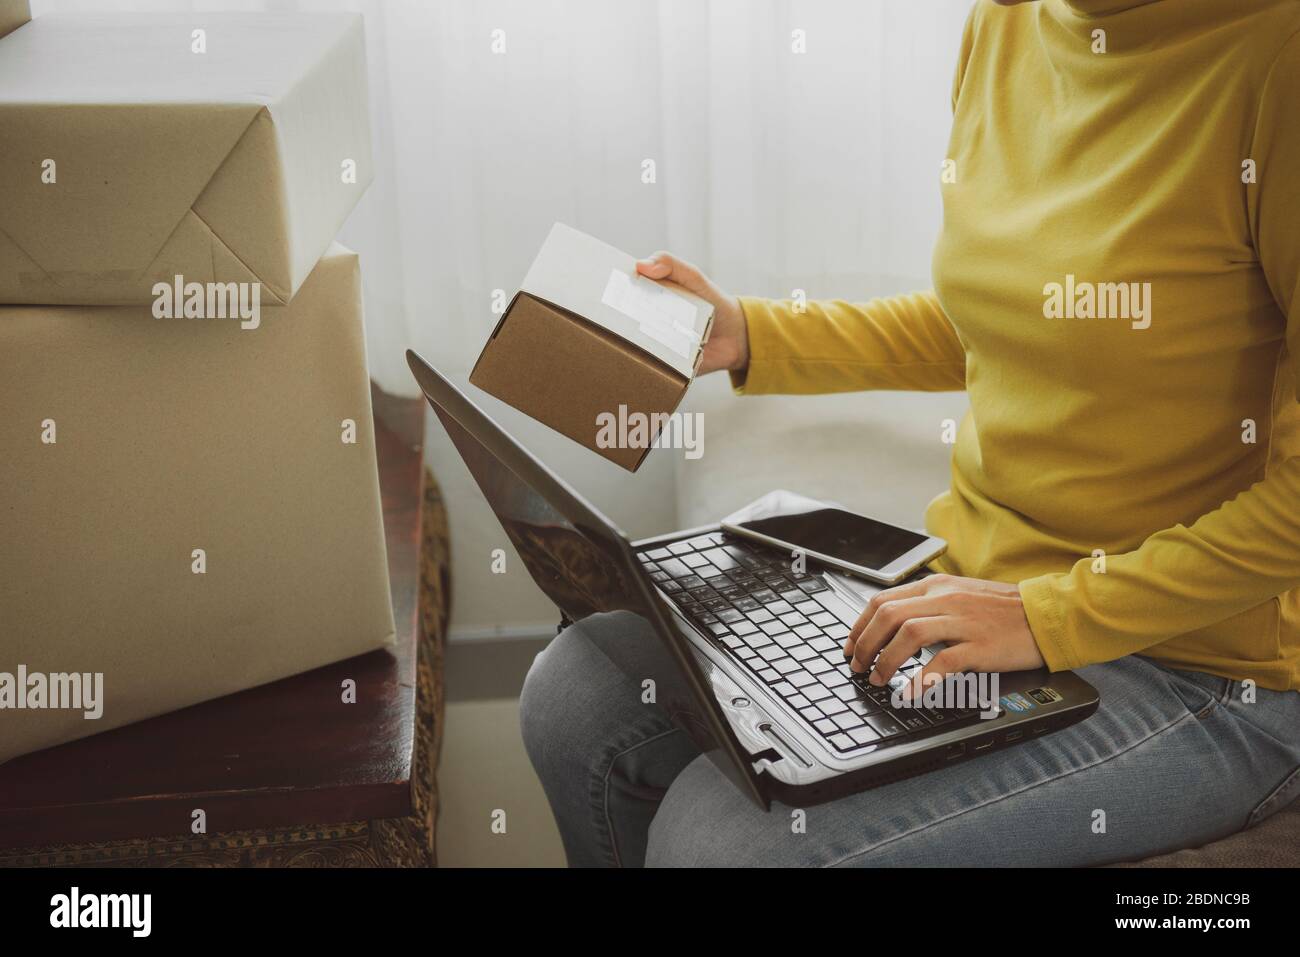 Frau hält eine Box zu bereiten, um den Kunden nach der Bestellung zu Hause liefern.Arbeit von zu Hause und Marketing-Online-oder Startup-Kleinunternehmen c Stockfoto